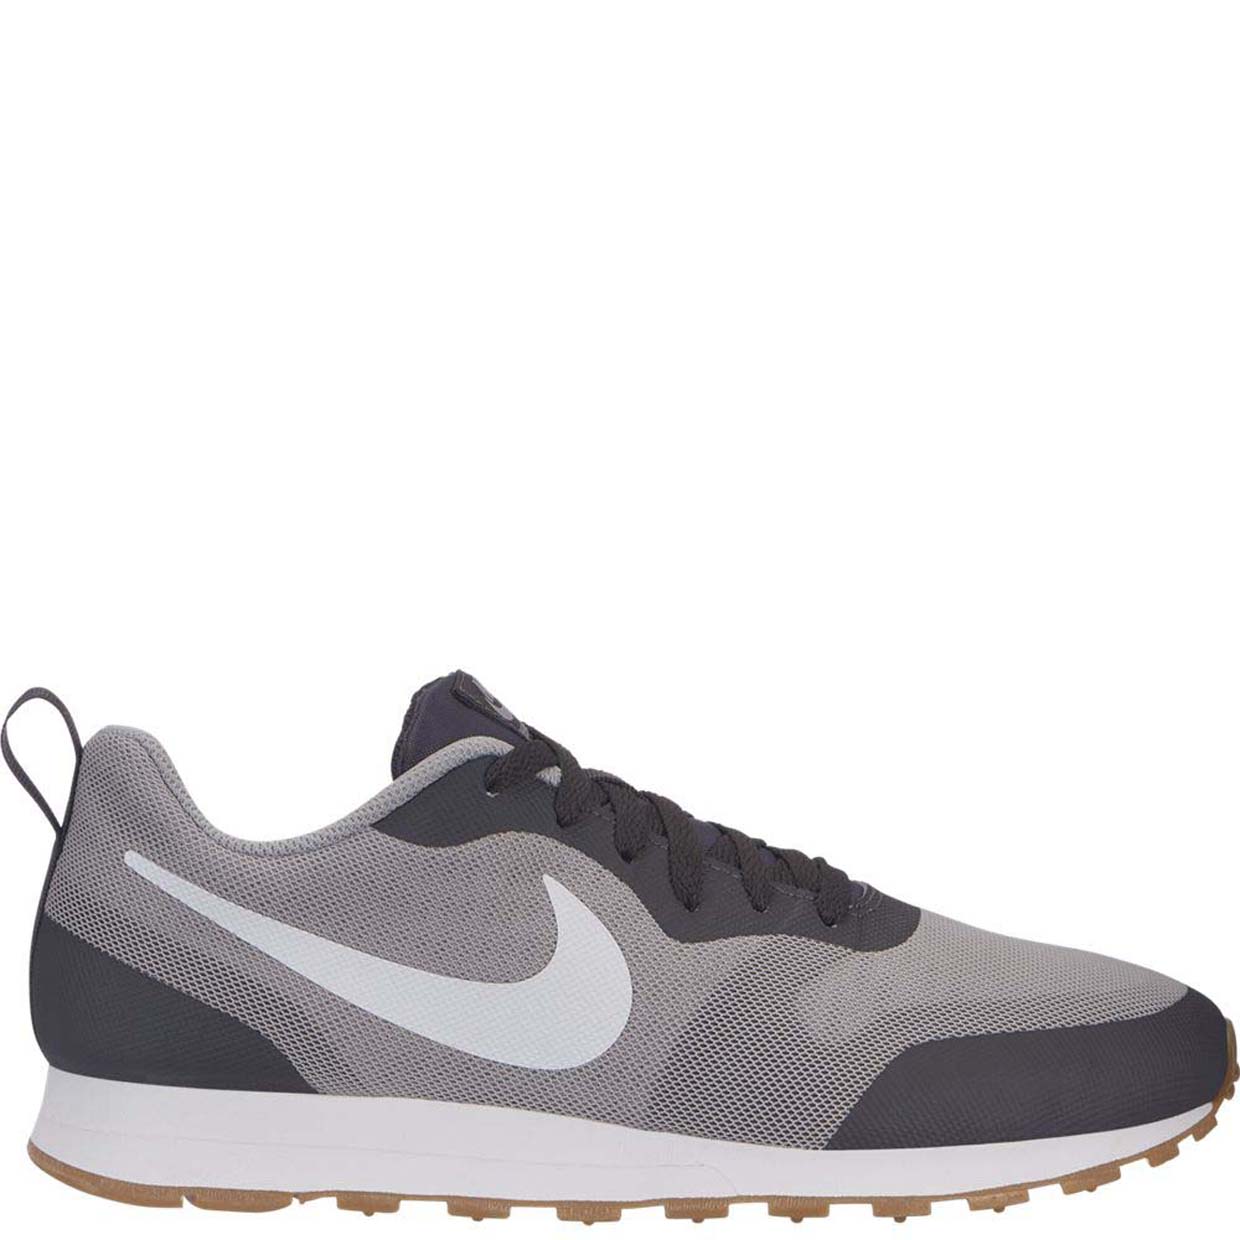 Мужские кроссовки Nike Md Runner 2 AO0265-002